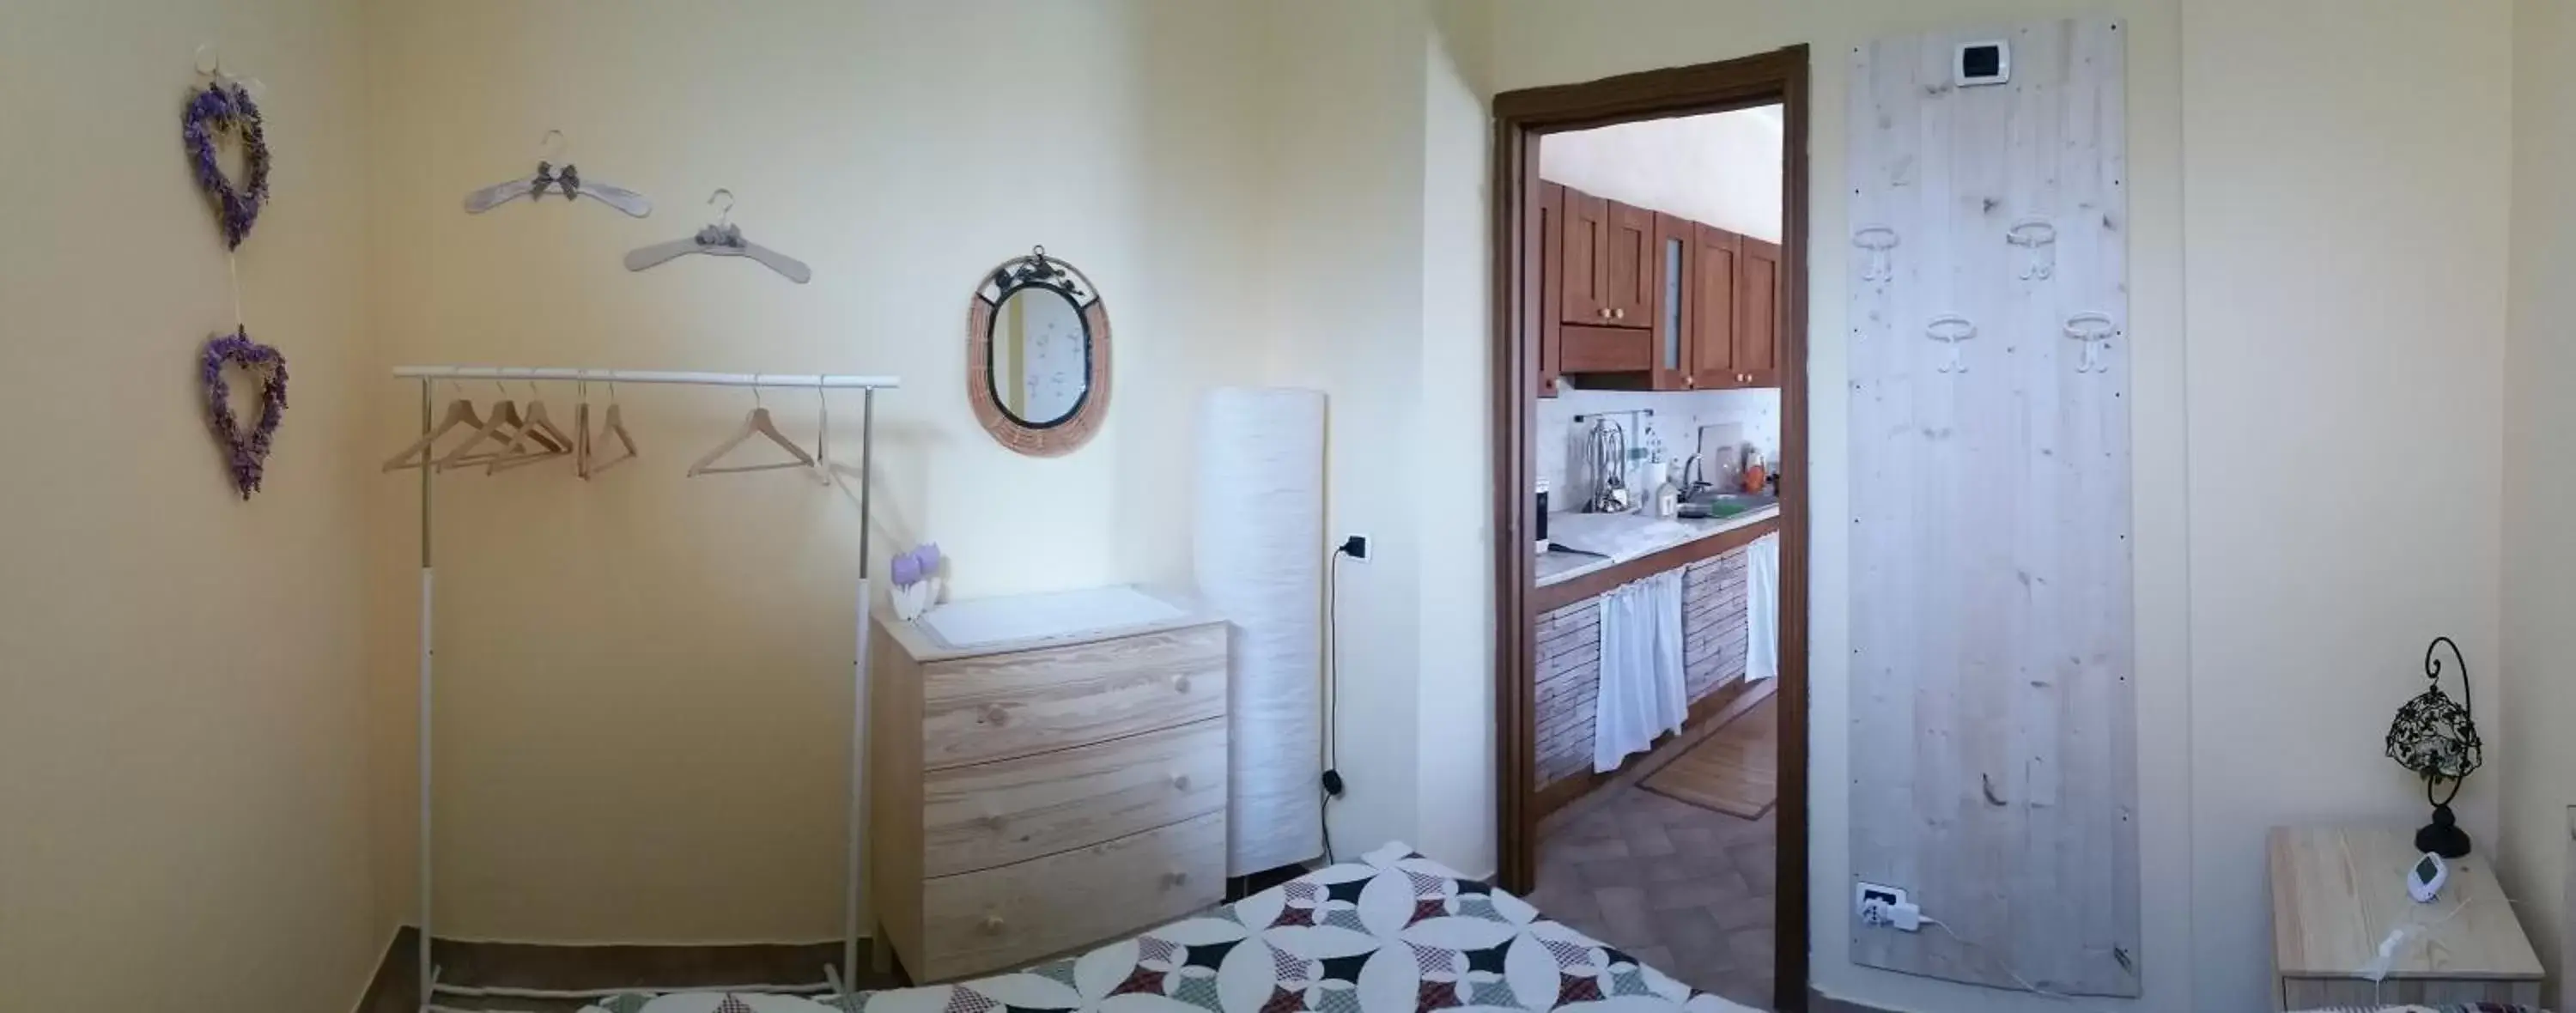 Bedroom, Bathroom in Civita Nova